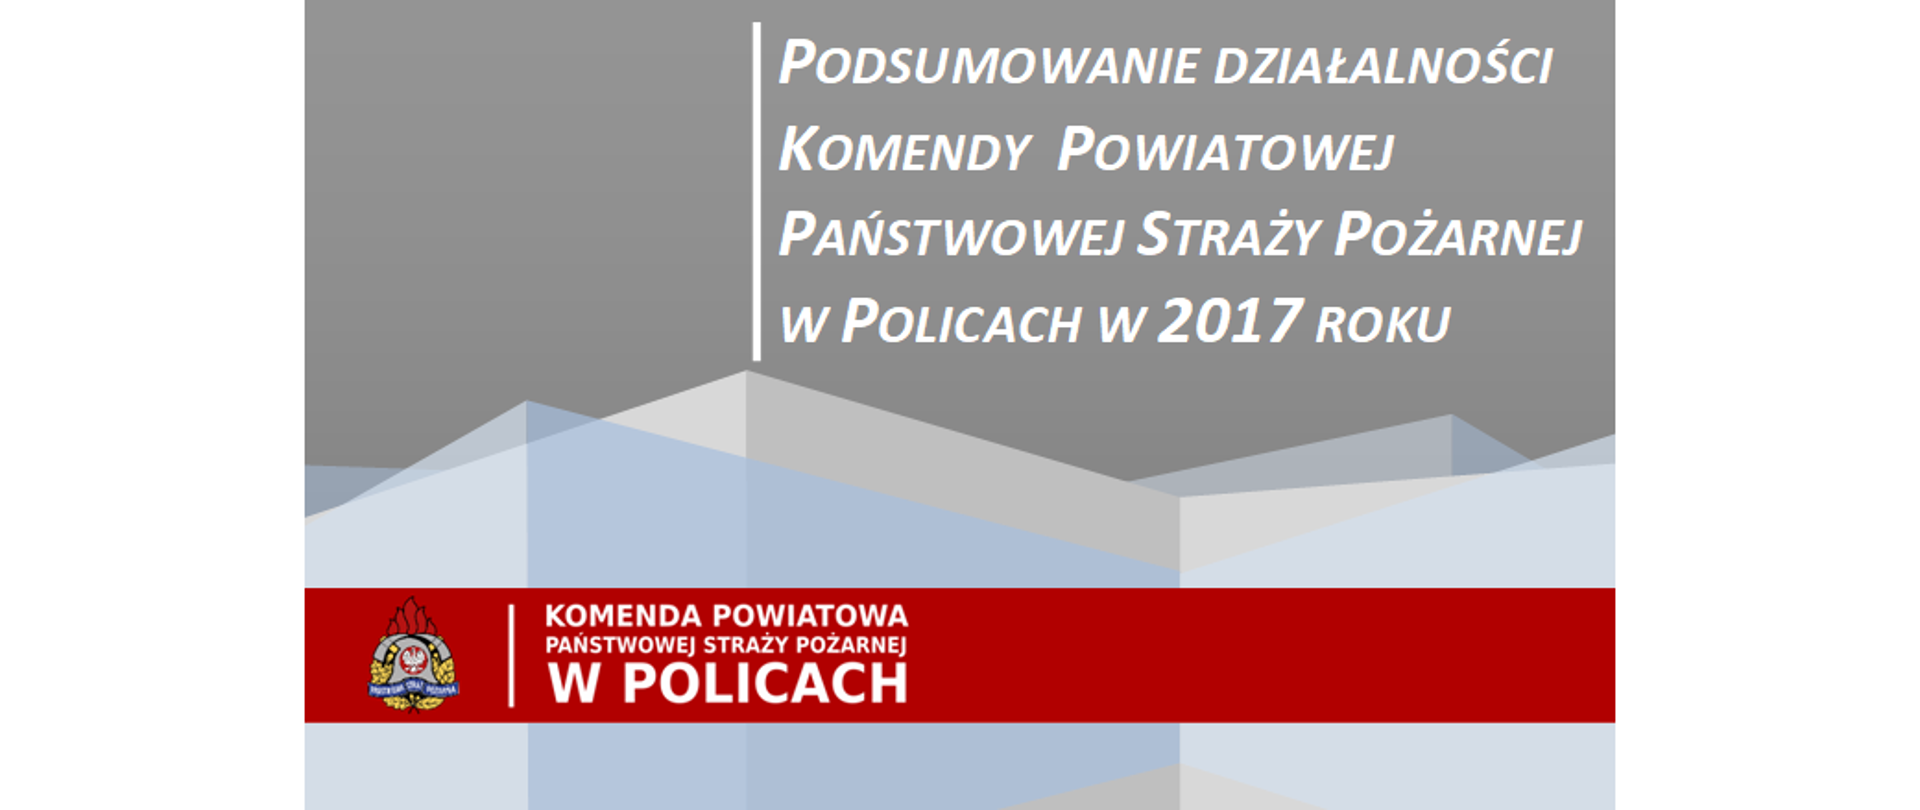 Podsumowanie działalności KP PSP w Policach w 2017 roku